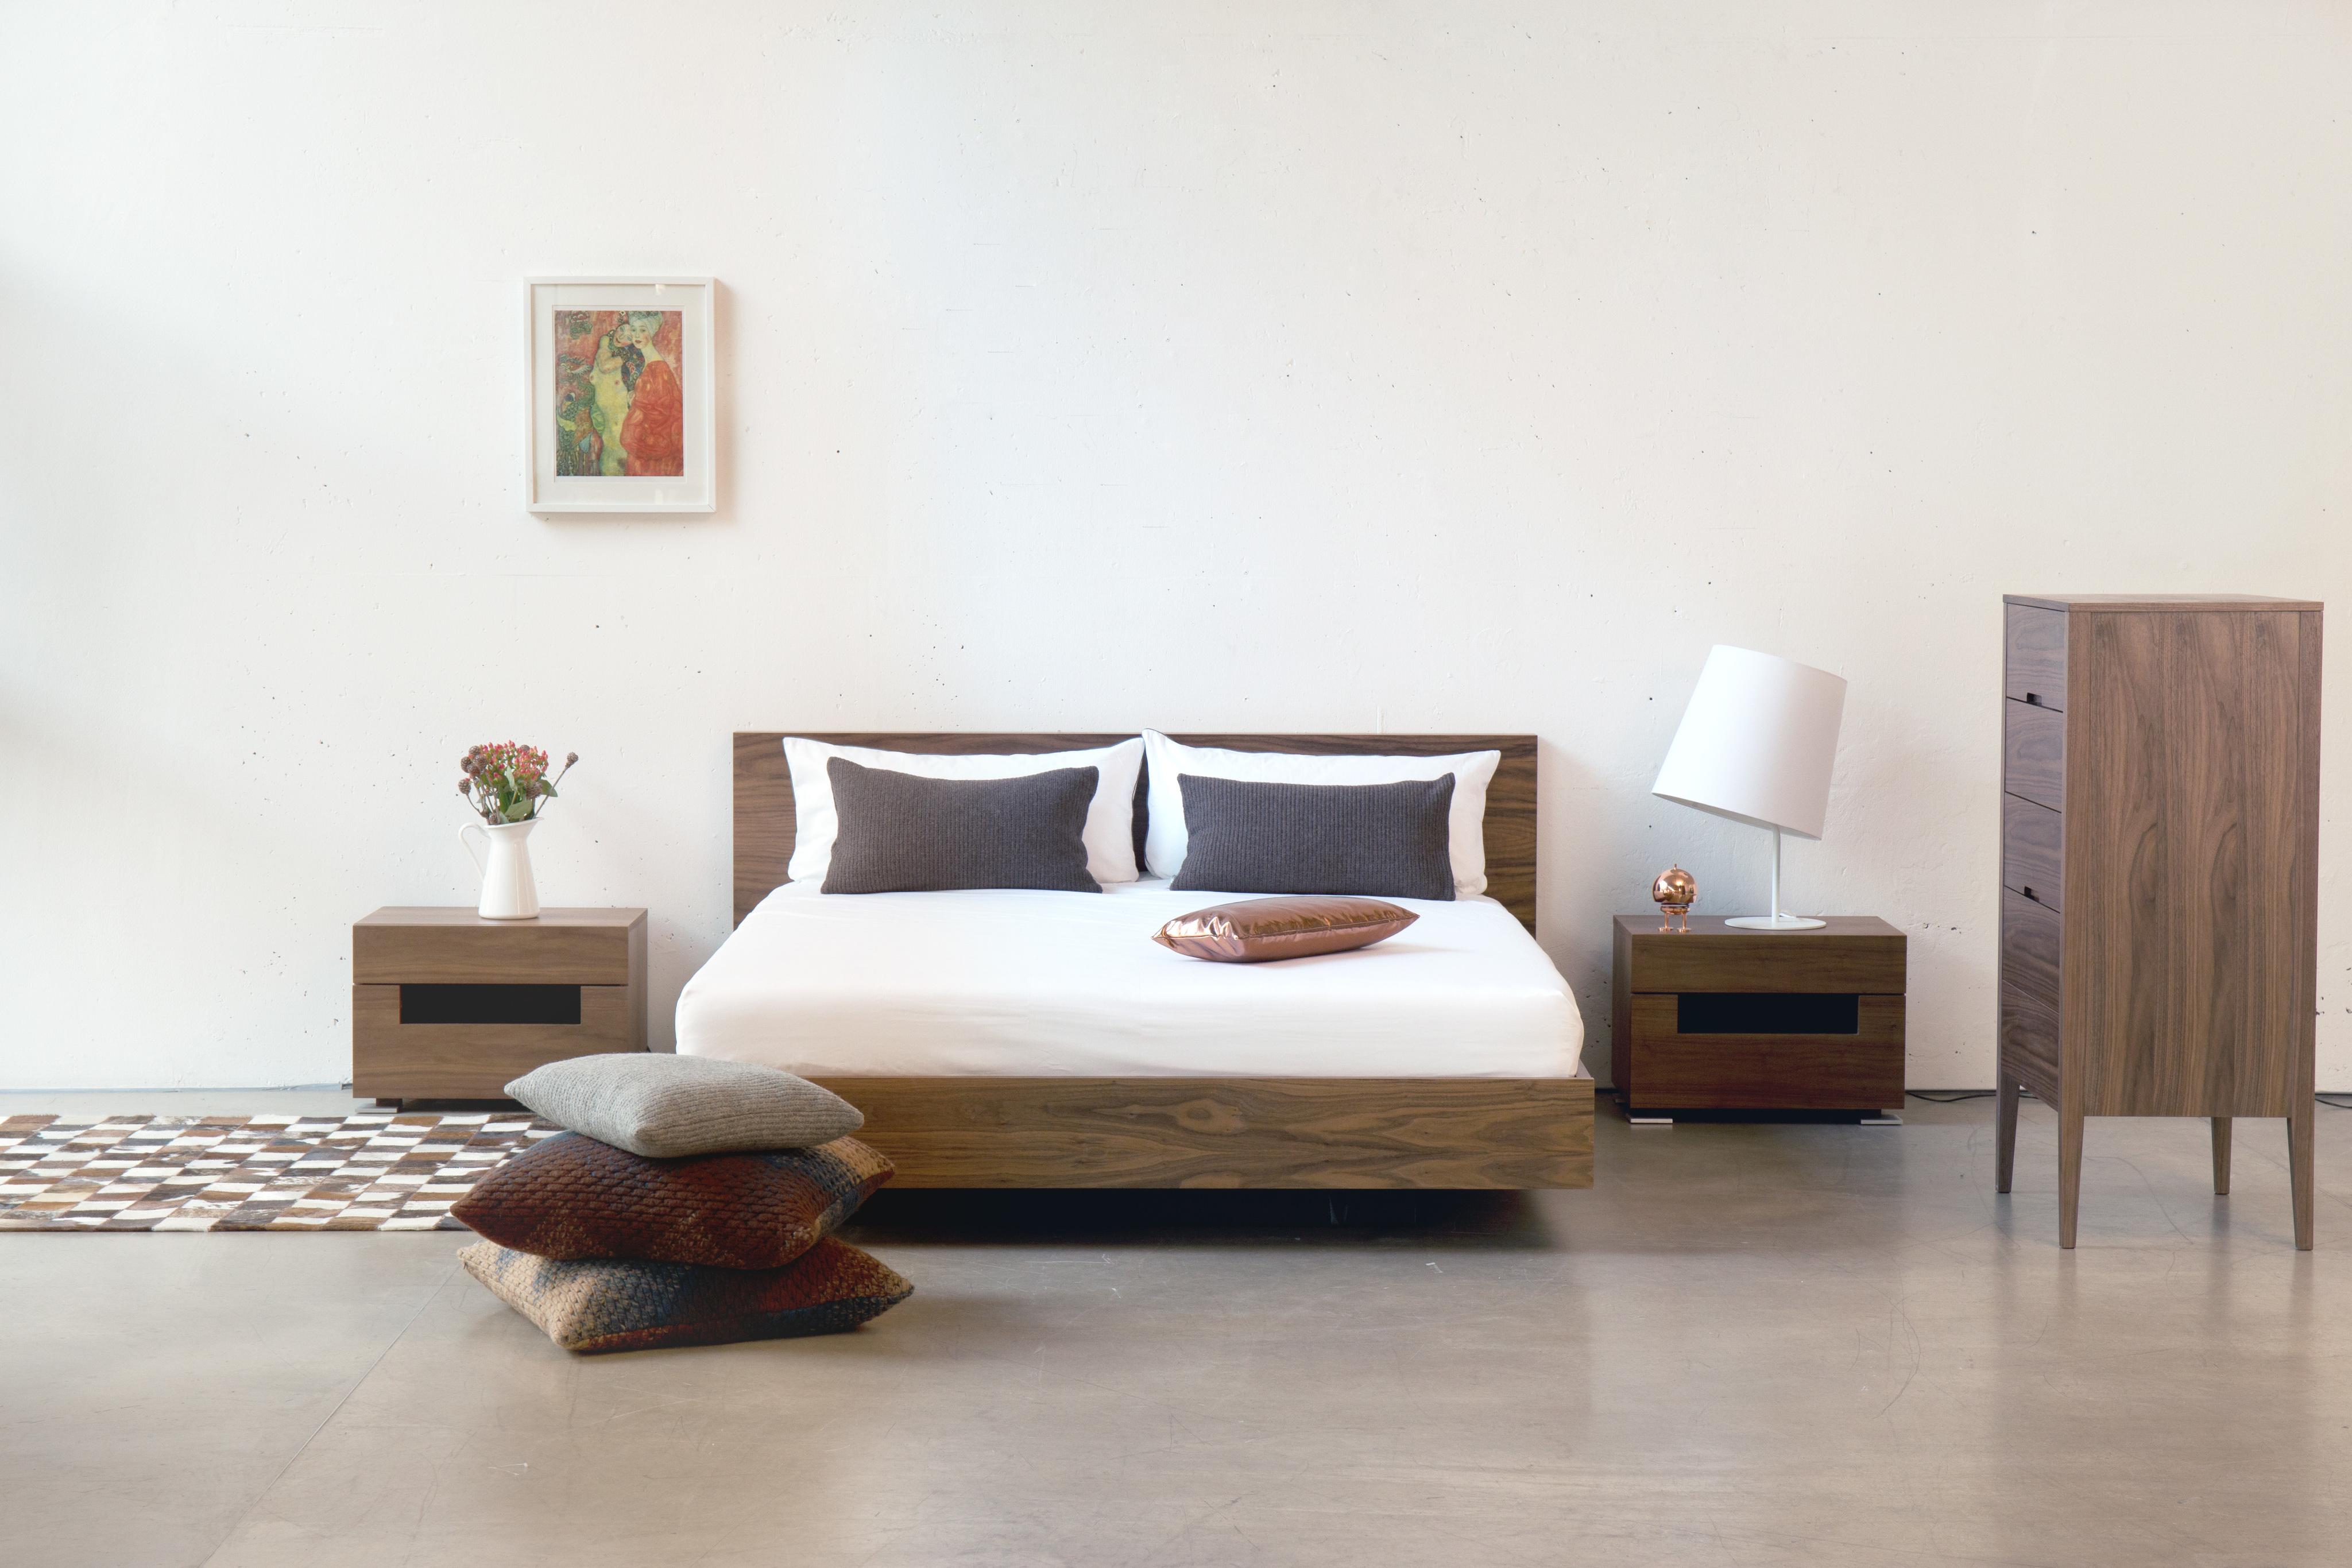 Modernes Schlafzimmer Eiche #bett #kissen #kommode #nachttisch #lampe ©Fashion4home GmbH